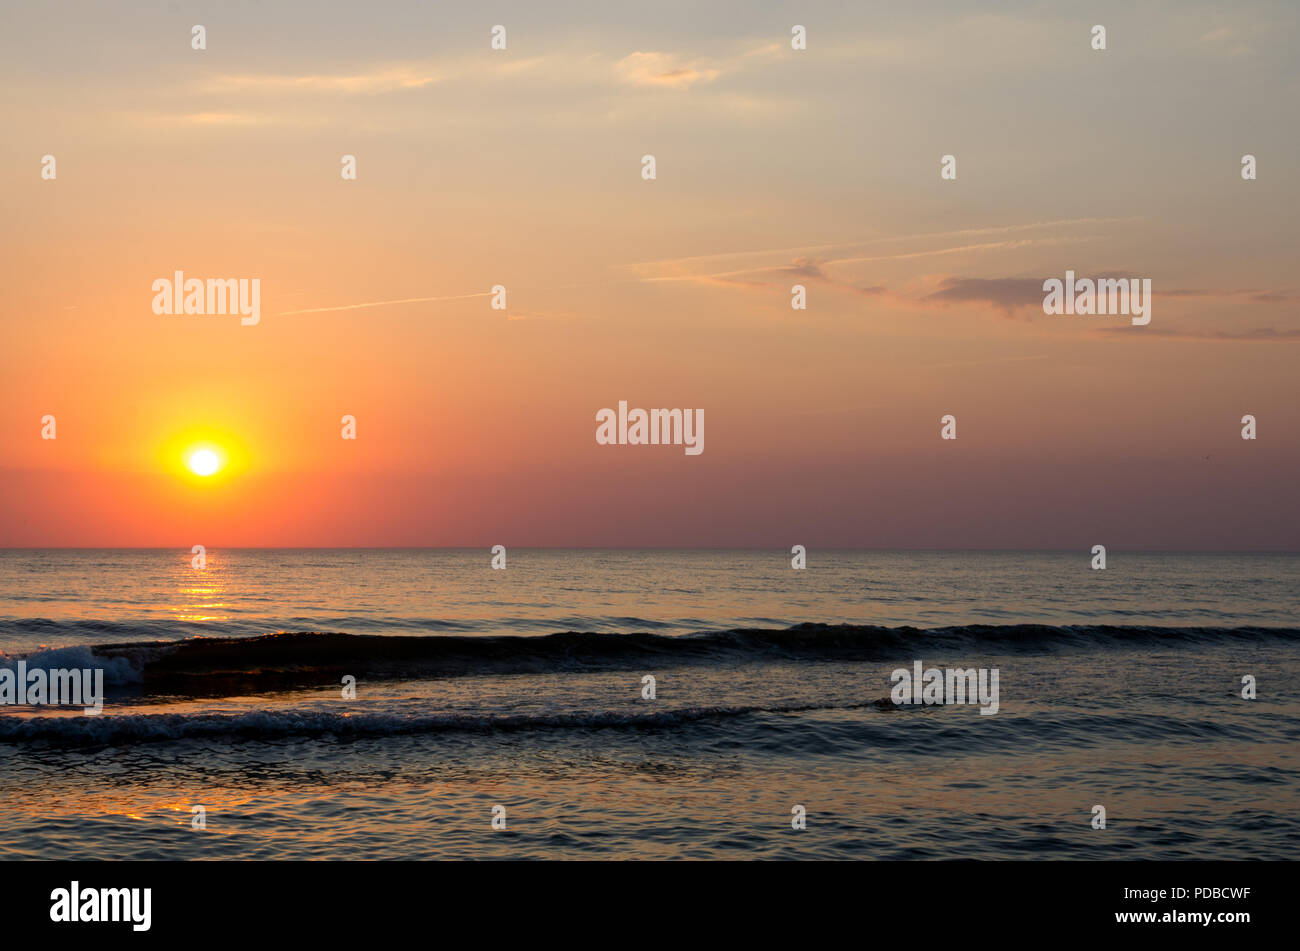 Sonnenuntergang. Schönen Sonnenuntergang Ostsee. Malerei Meer Sonnenuntergang. Das Meer bei Sonnenuntergang. Erstaunliche Meer Sonnenuntergang. Sonnenuntergang Meer Wellen. Sommer Sonnenuntergang. Stockfoto